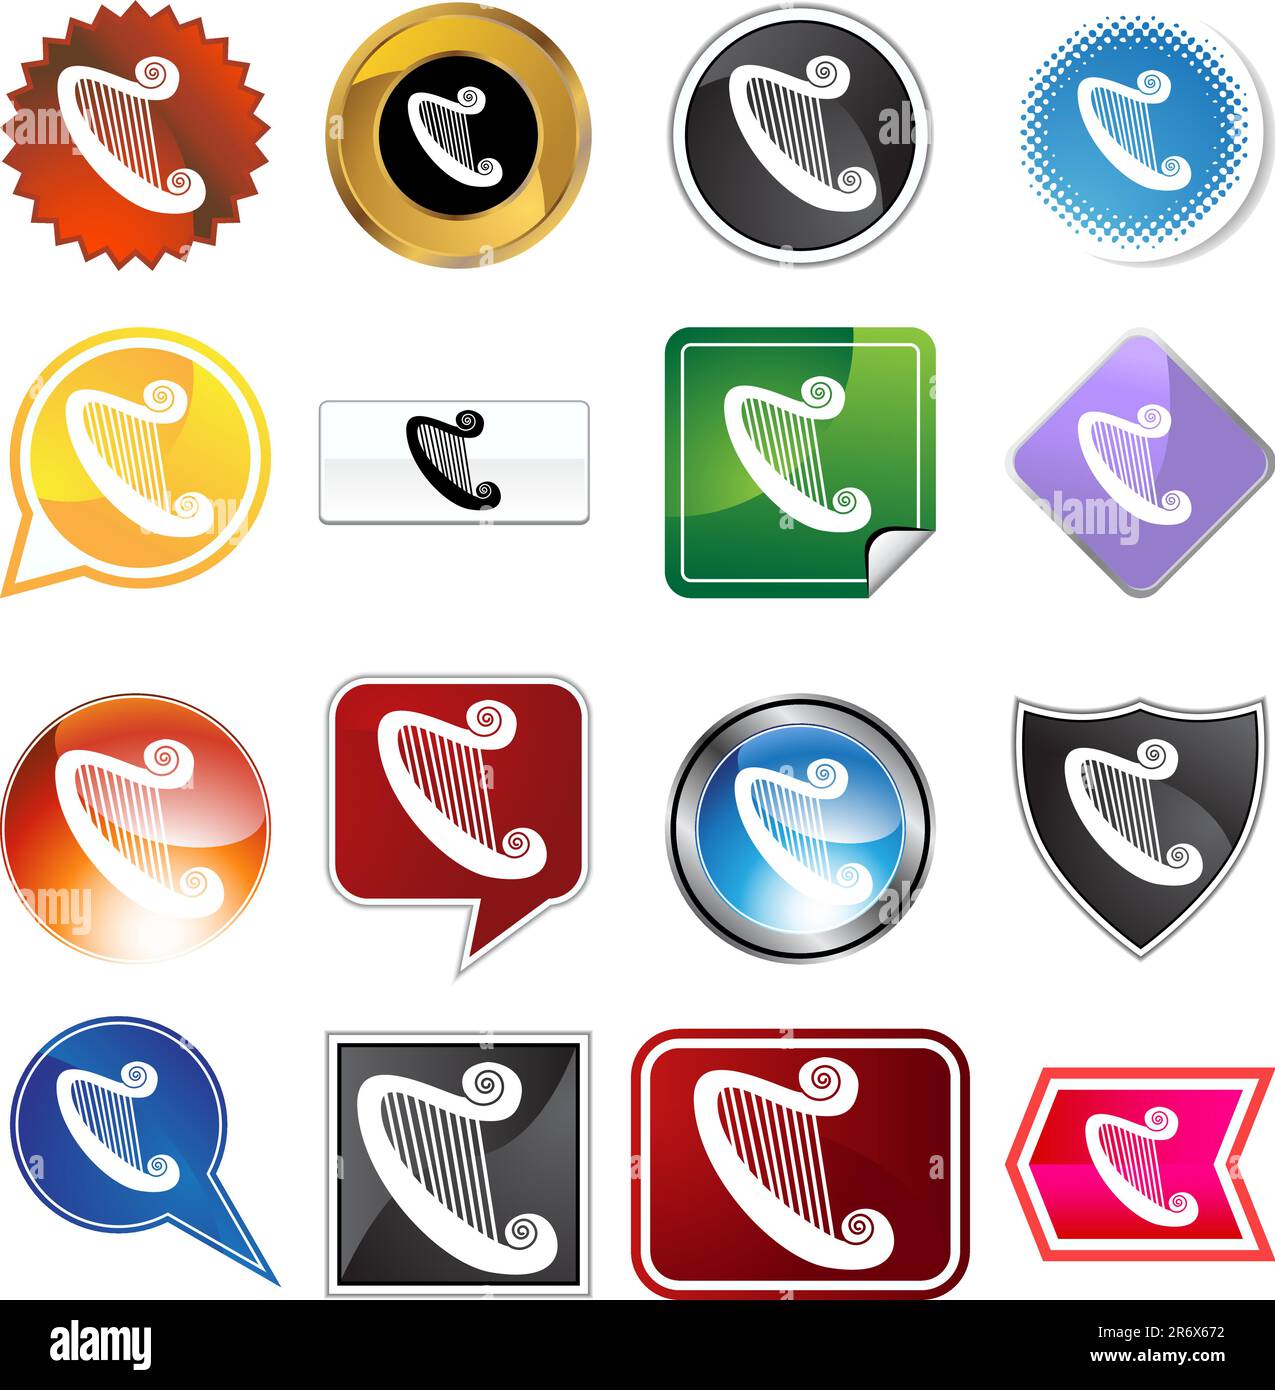 Un set di 16 pulsanti a icone in diverse forme e colori - HARP. Illustrazione Vettoriale